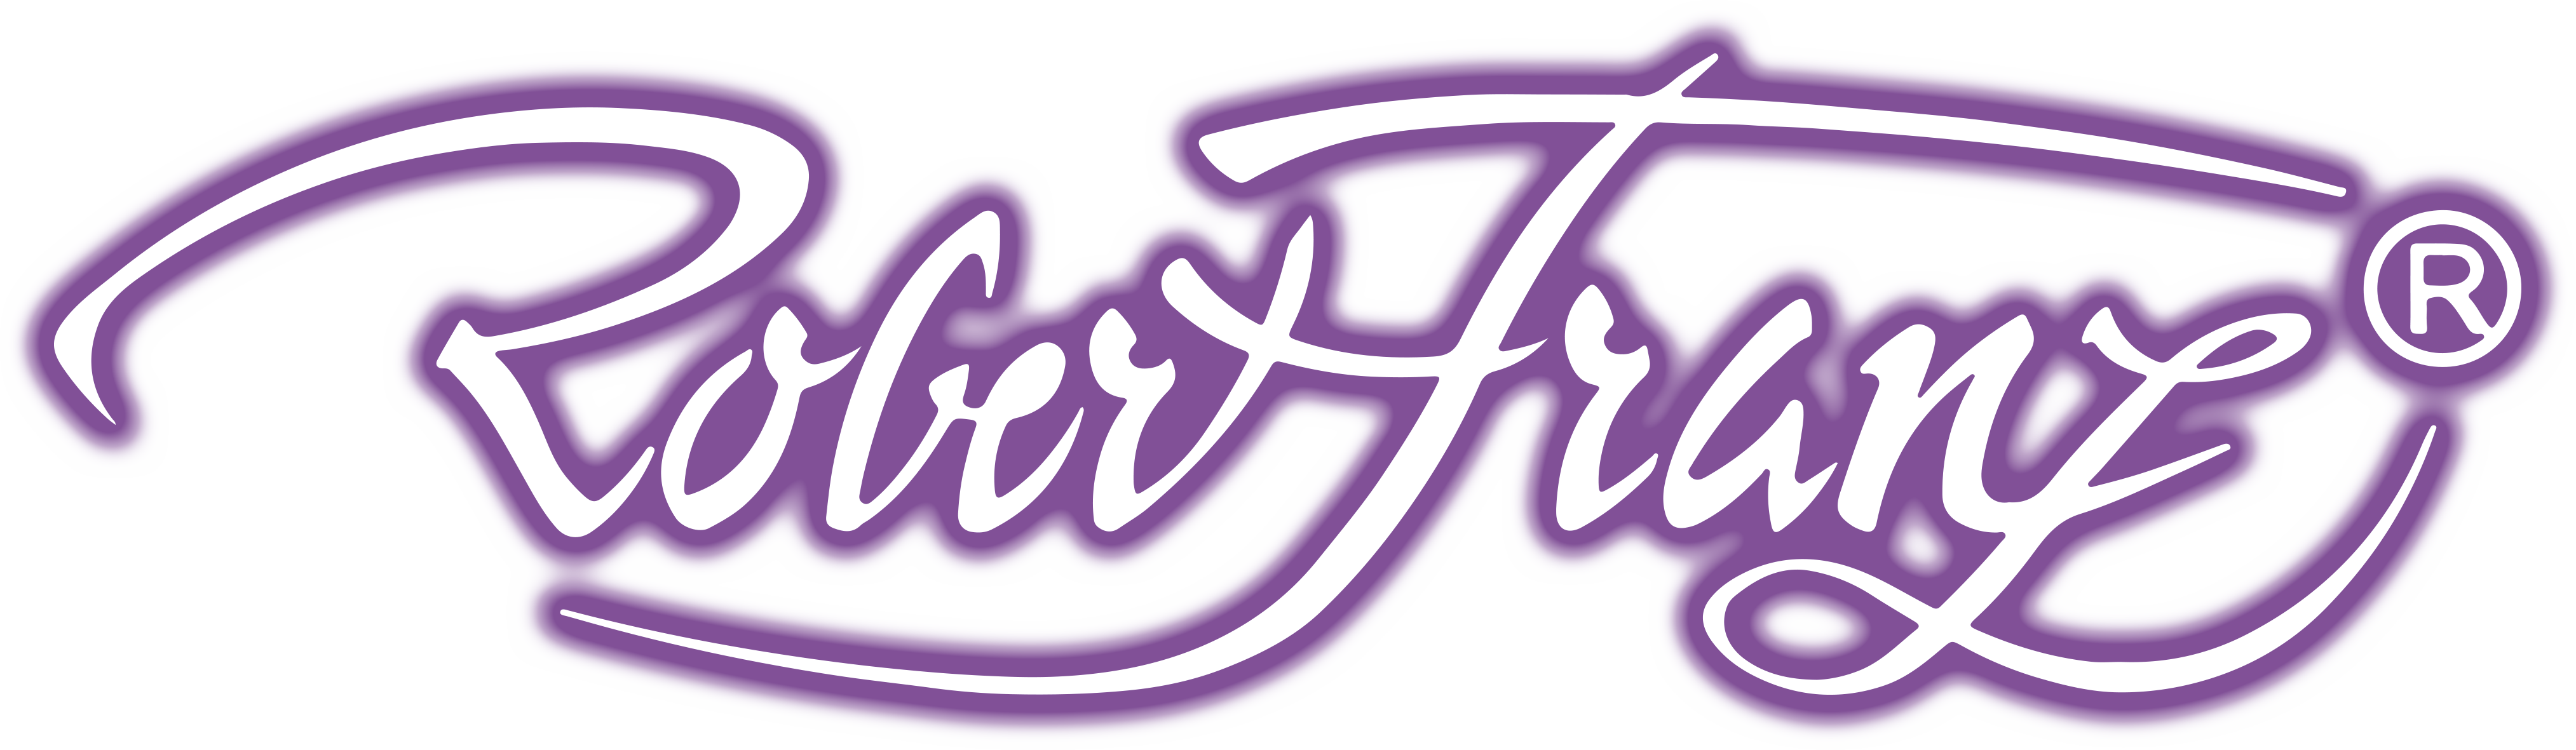 Robert-Franz-Logo-Lila-Weiss